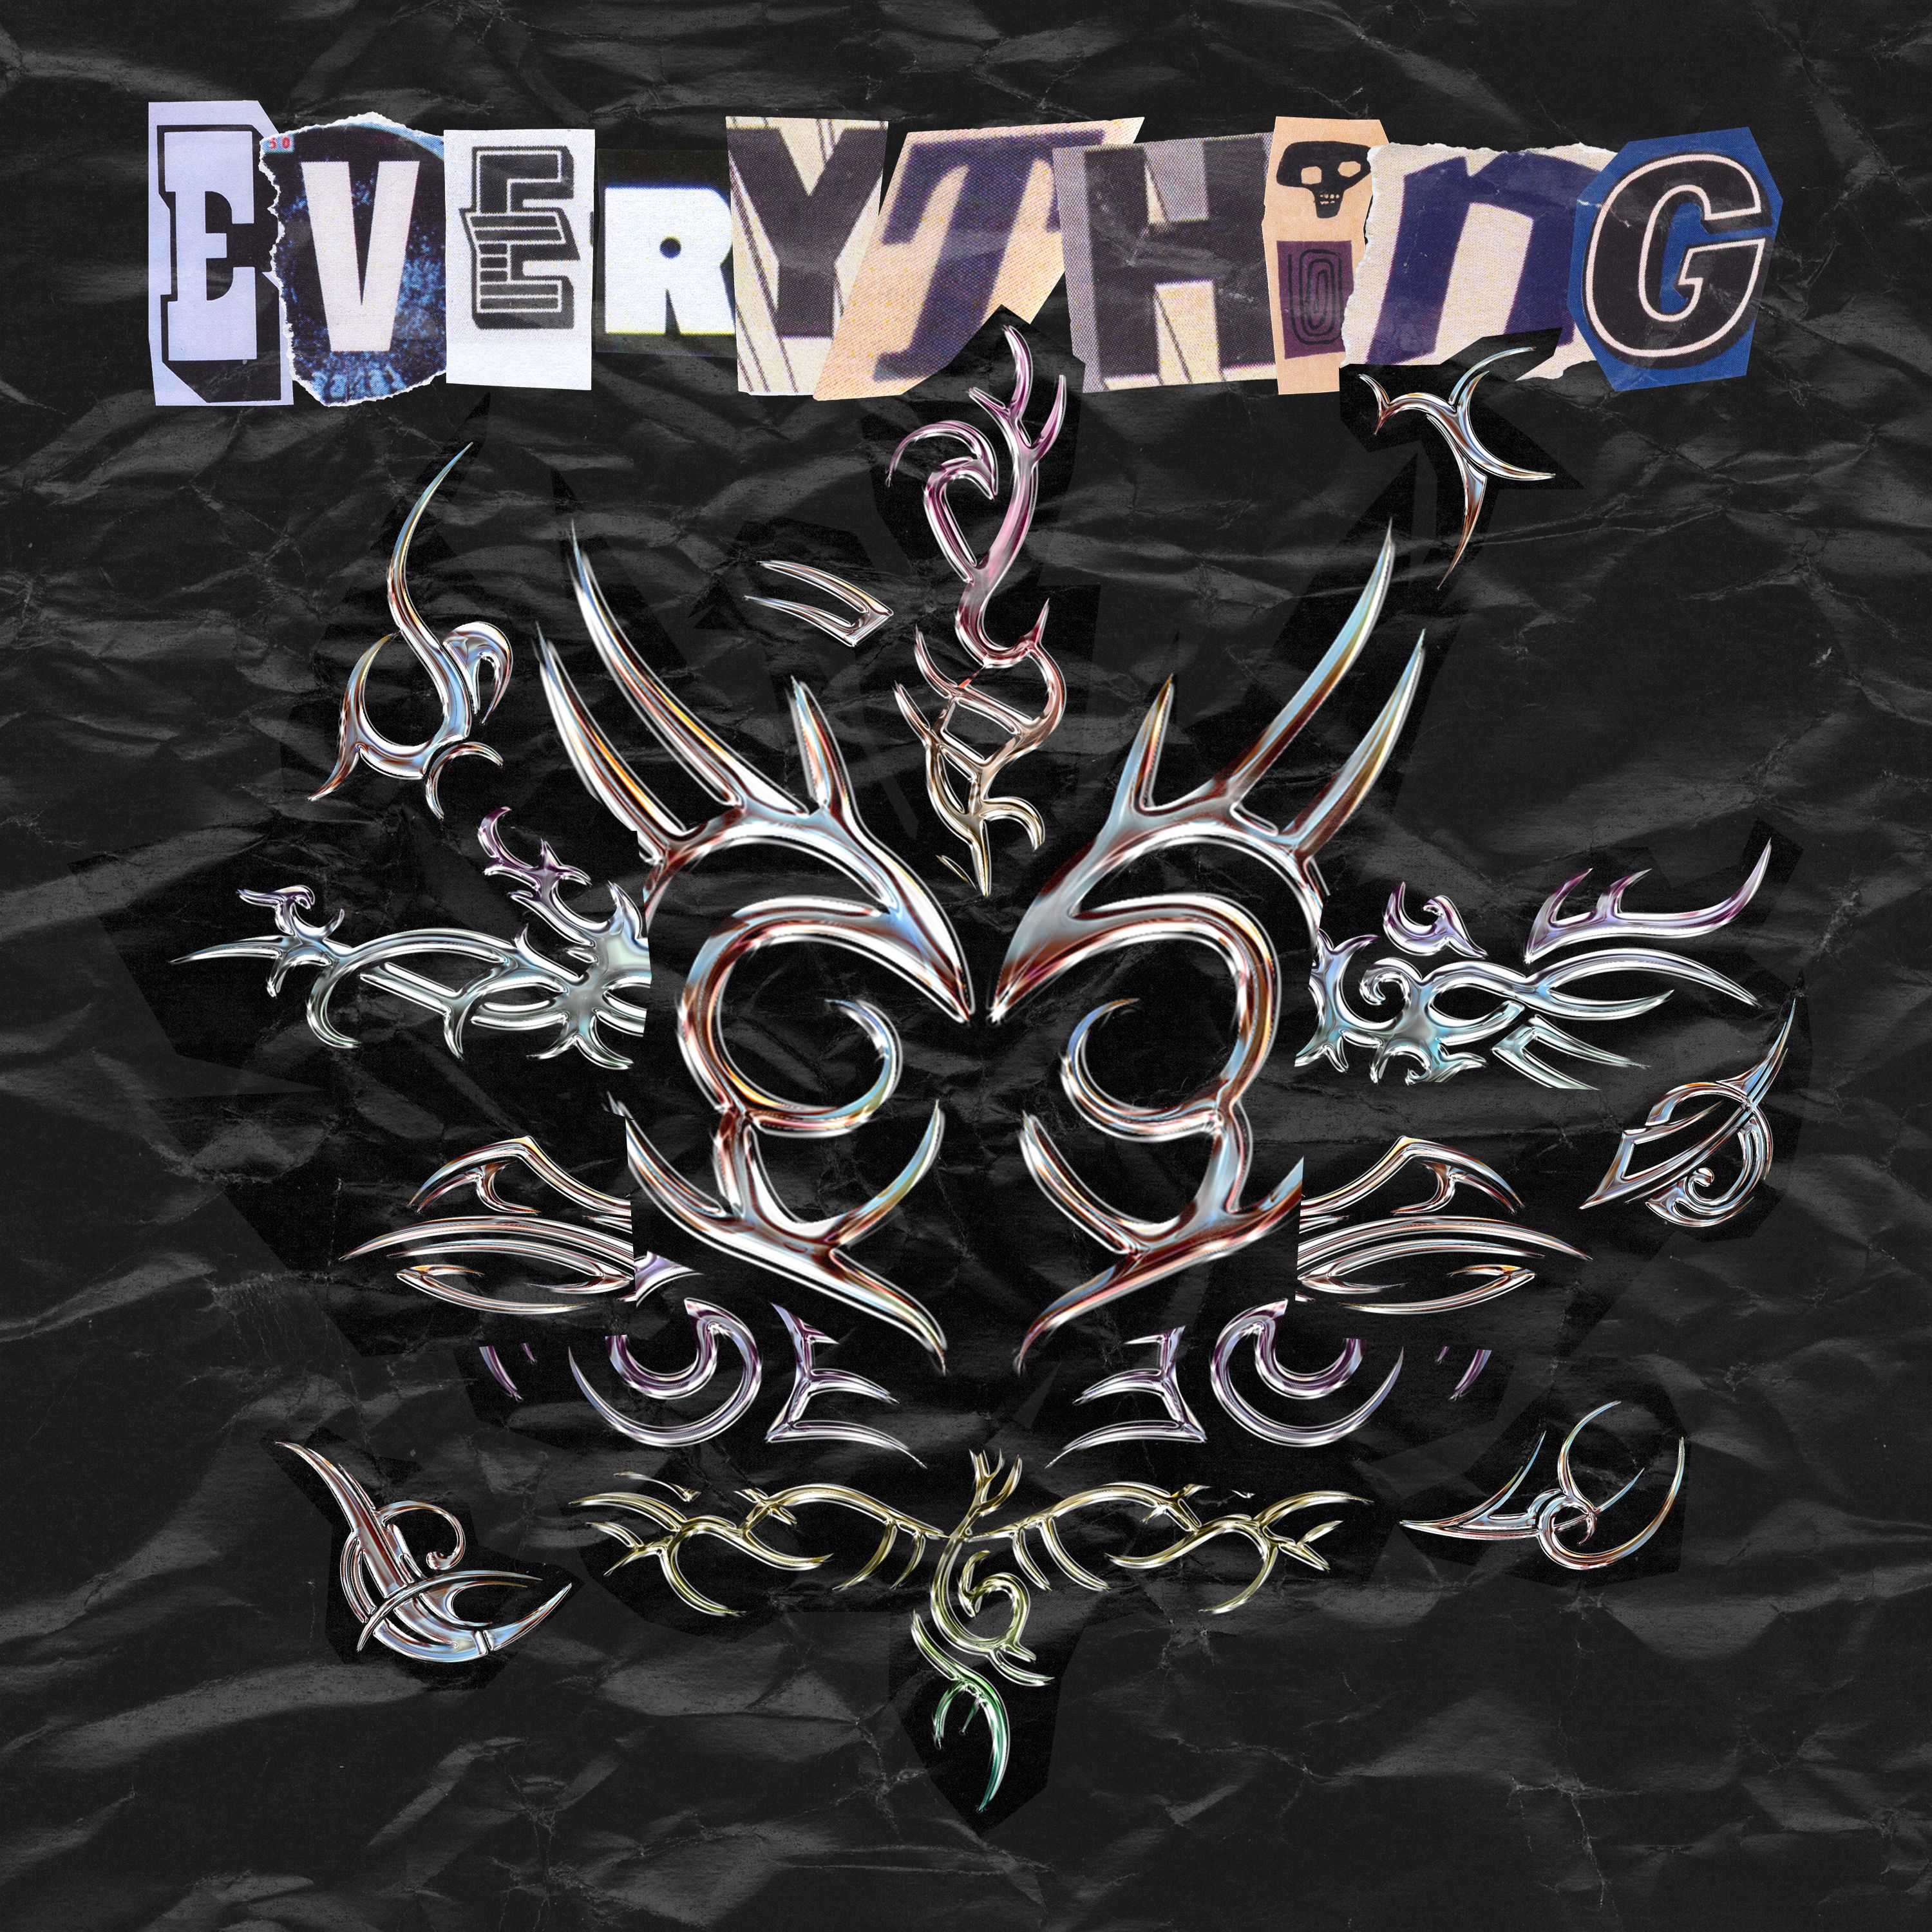 הורד Snavs - Everything